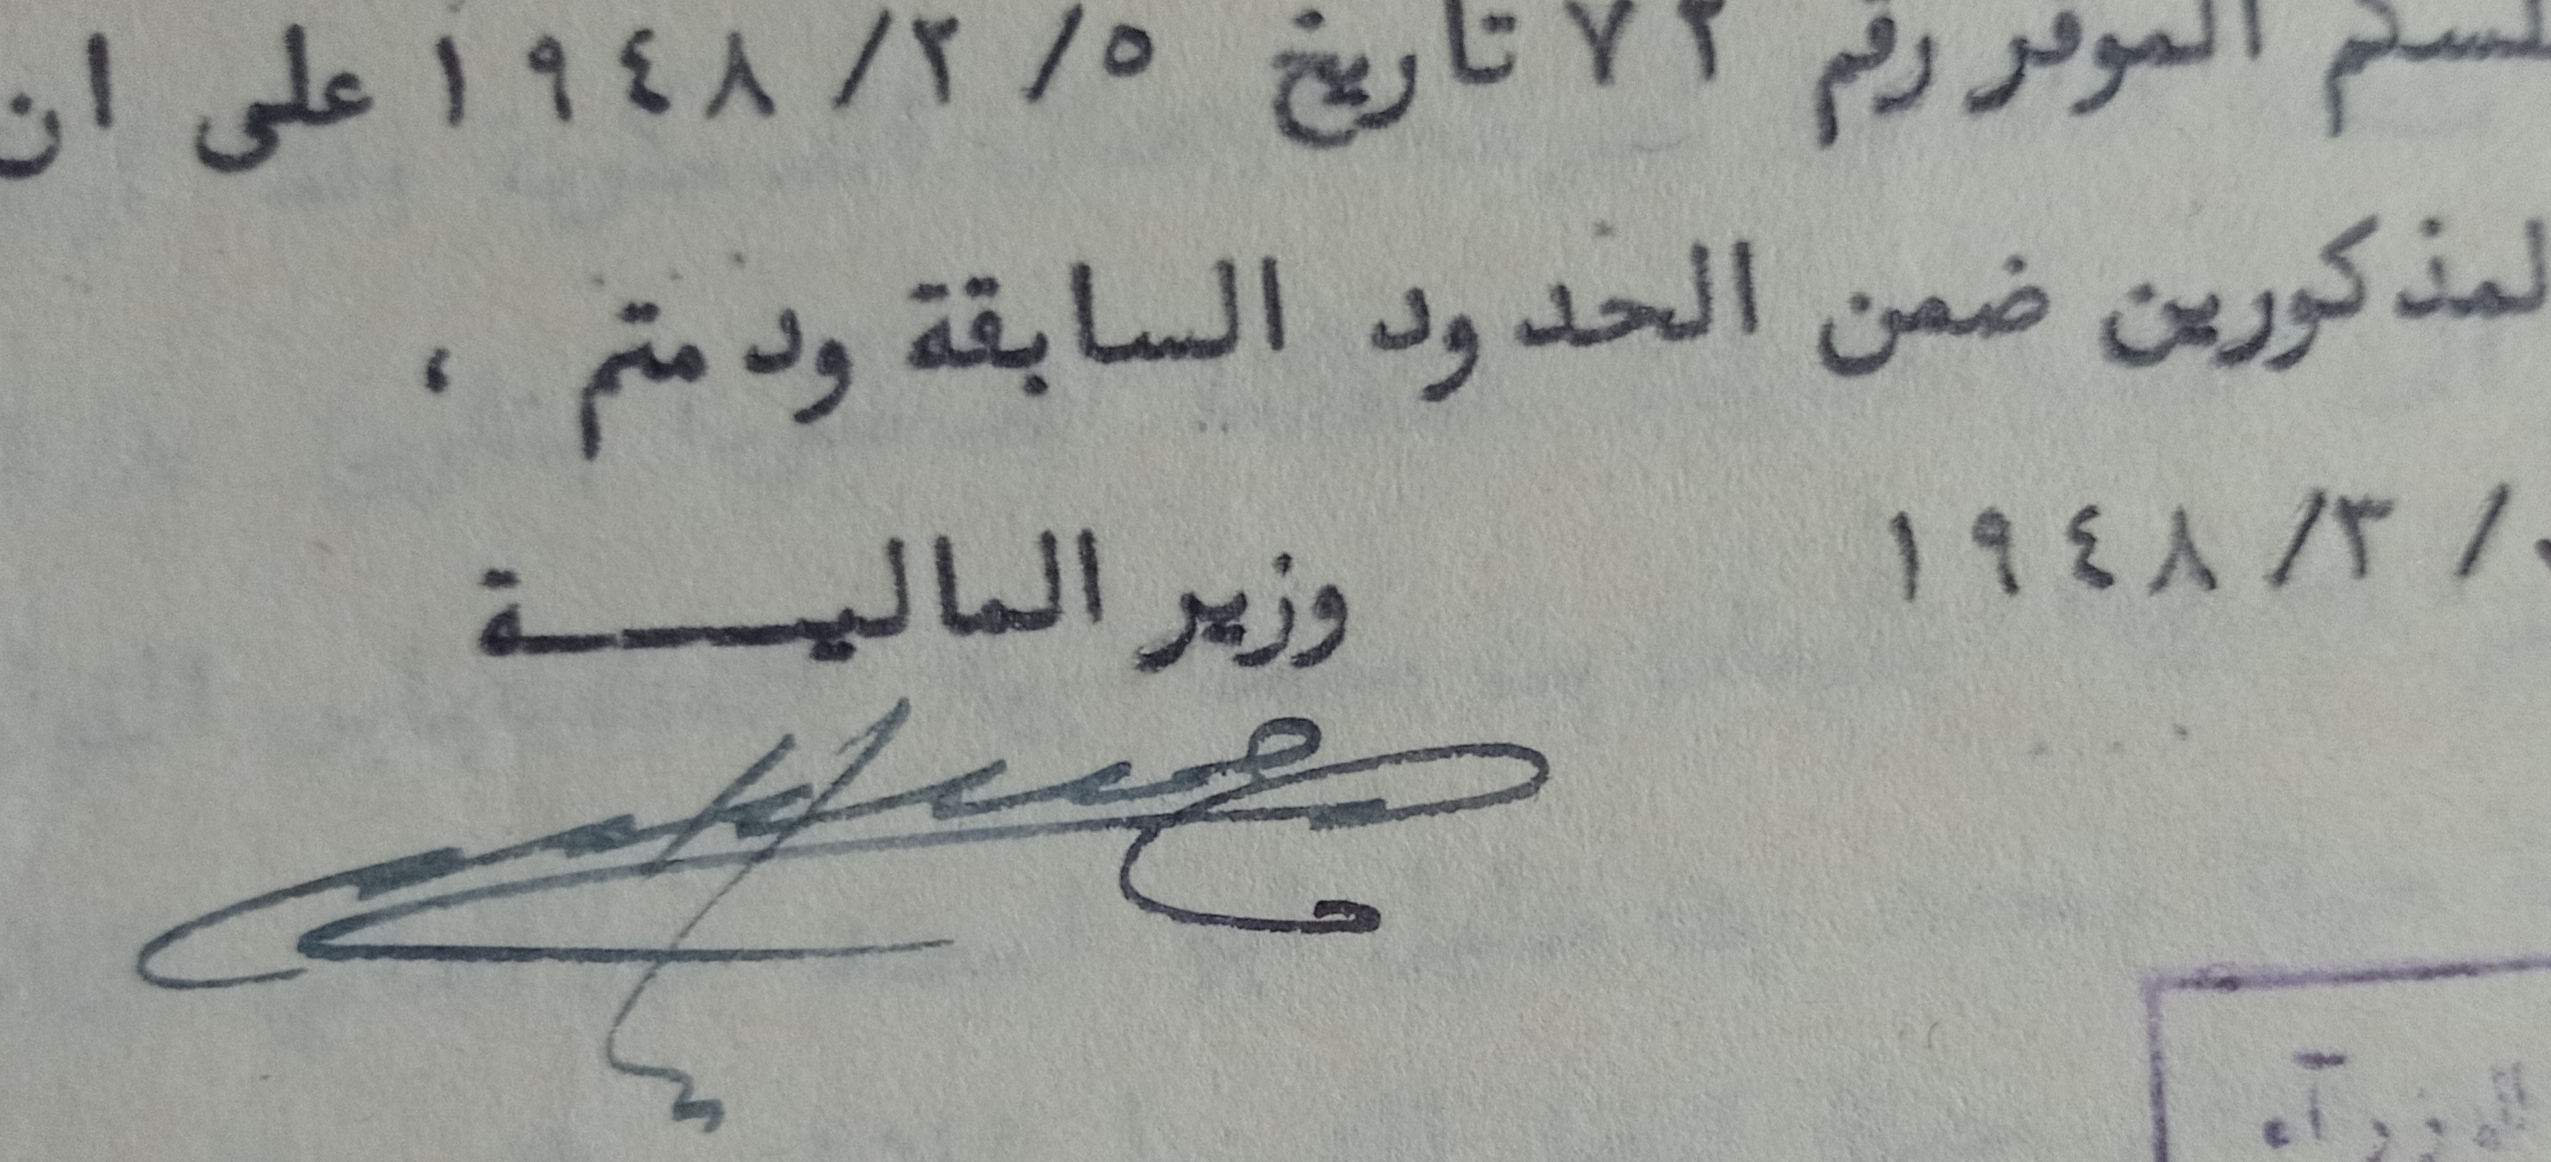 التاريخ السوري المعاصر - توقيع سعيد الغزي وزير المالية في سورية عام 1948